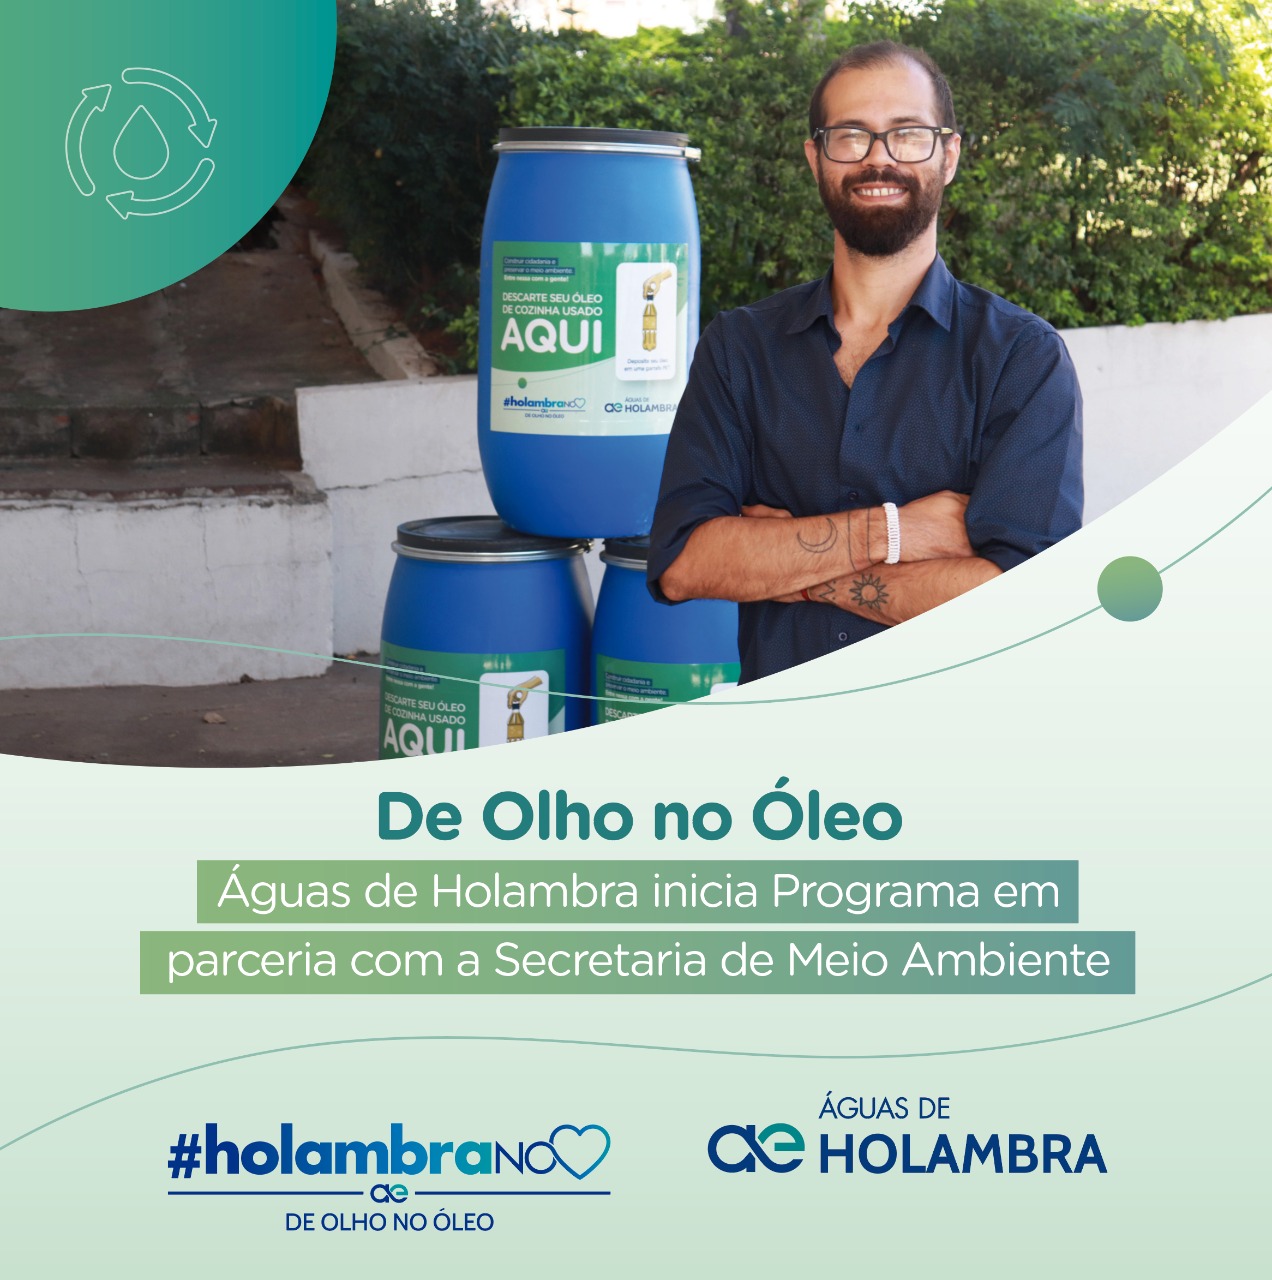 Águas de Holambra inicia Programa De Olho no Óleo em parceria com a Secretaria de Meio Ambiente